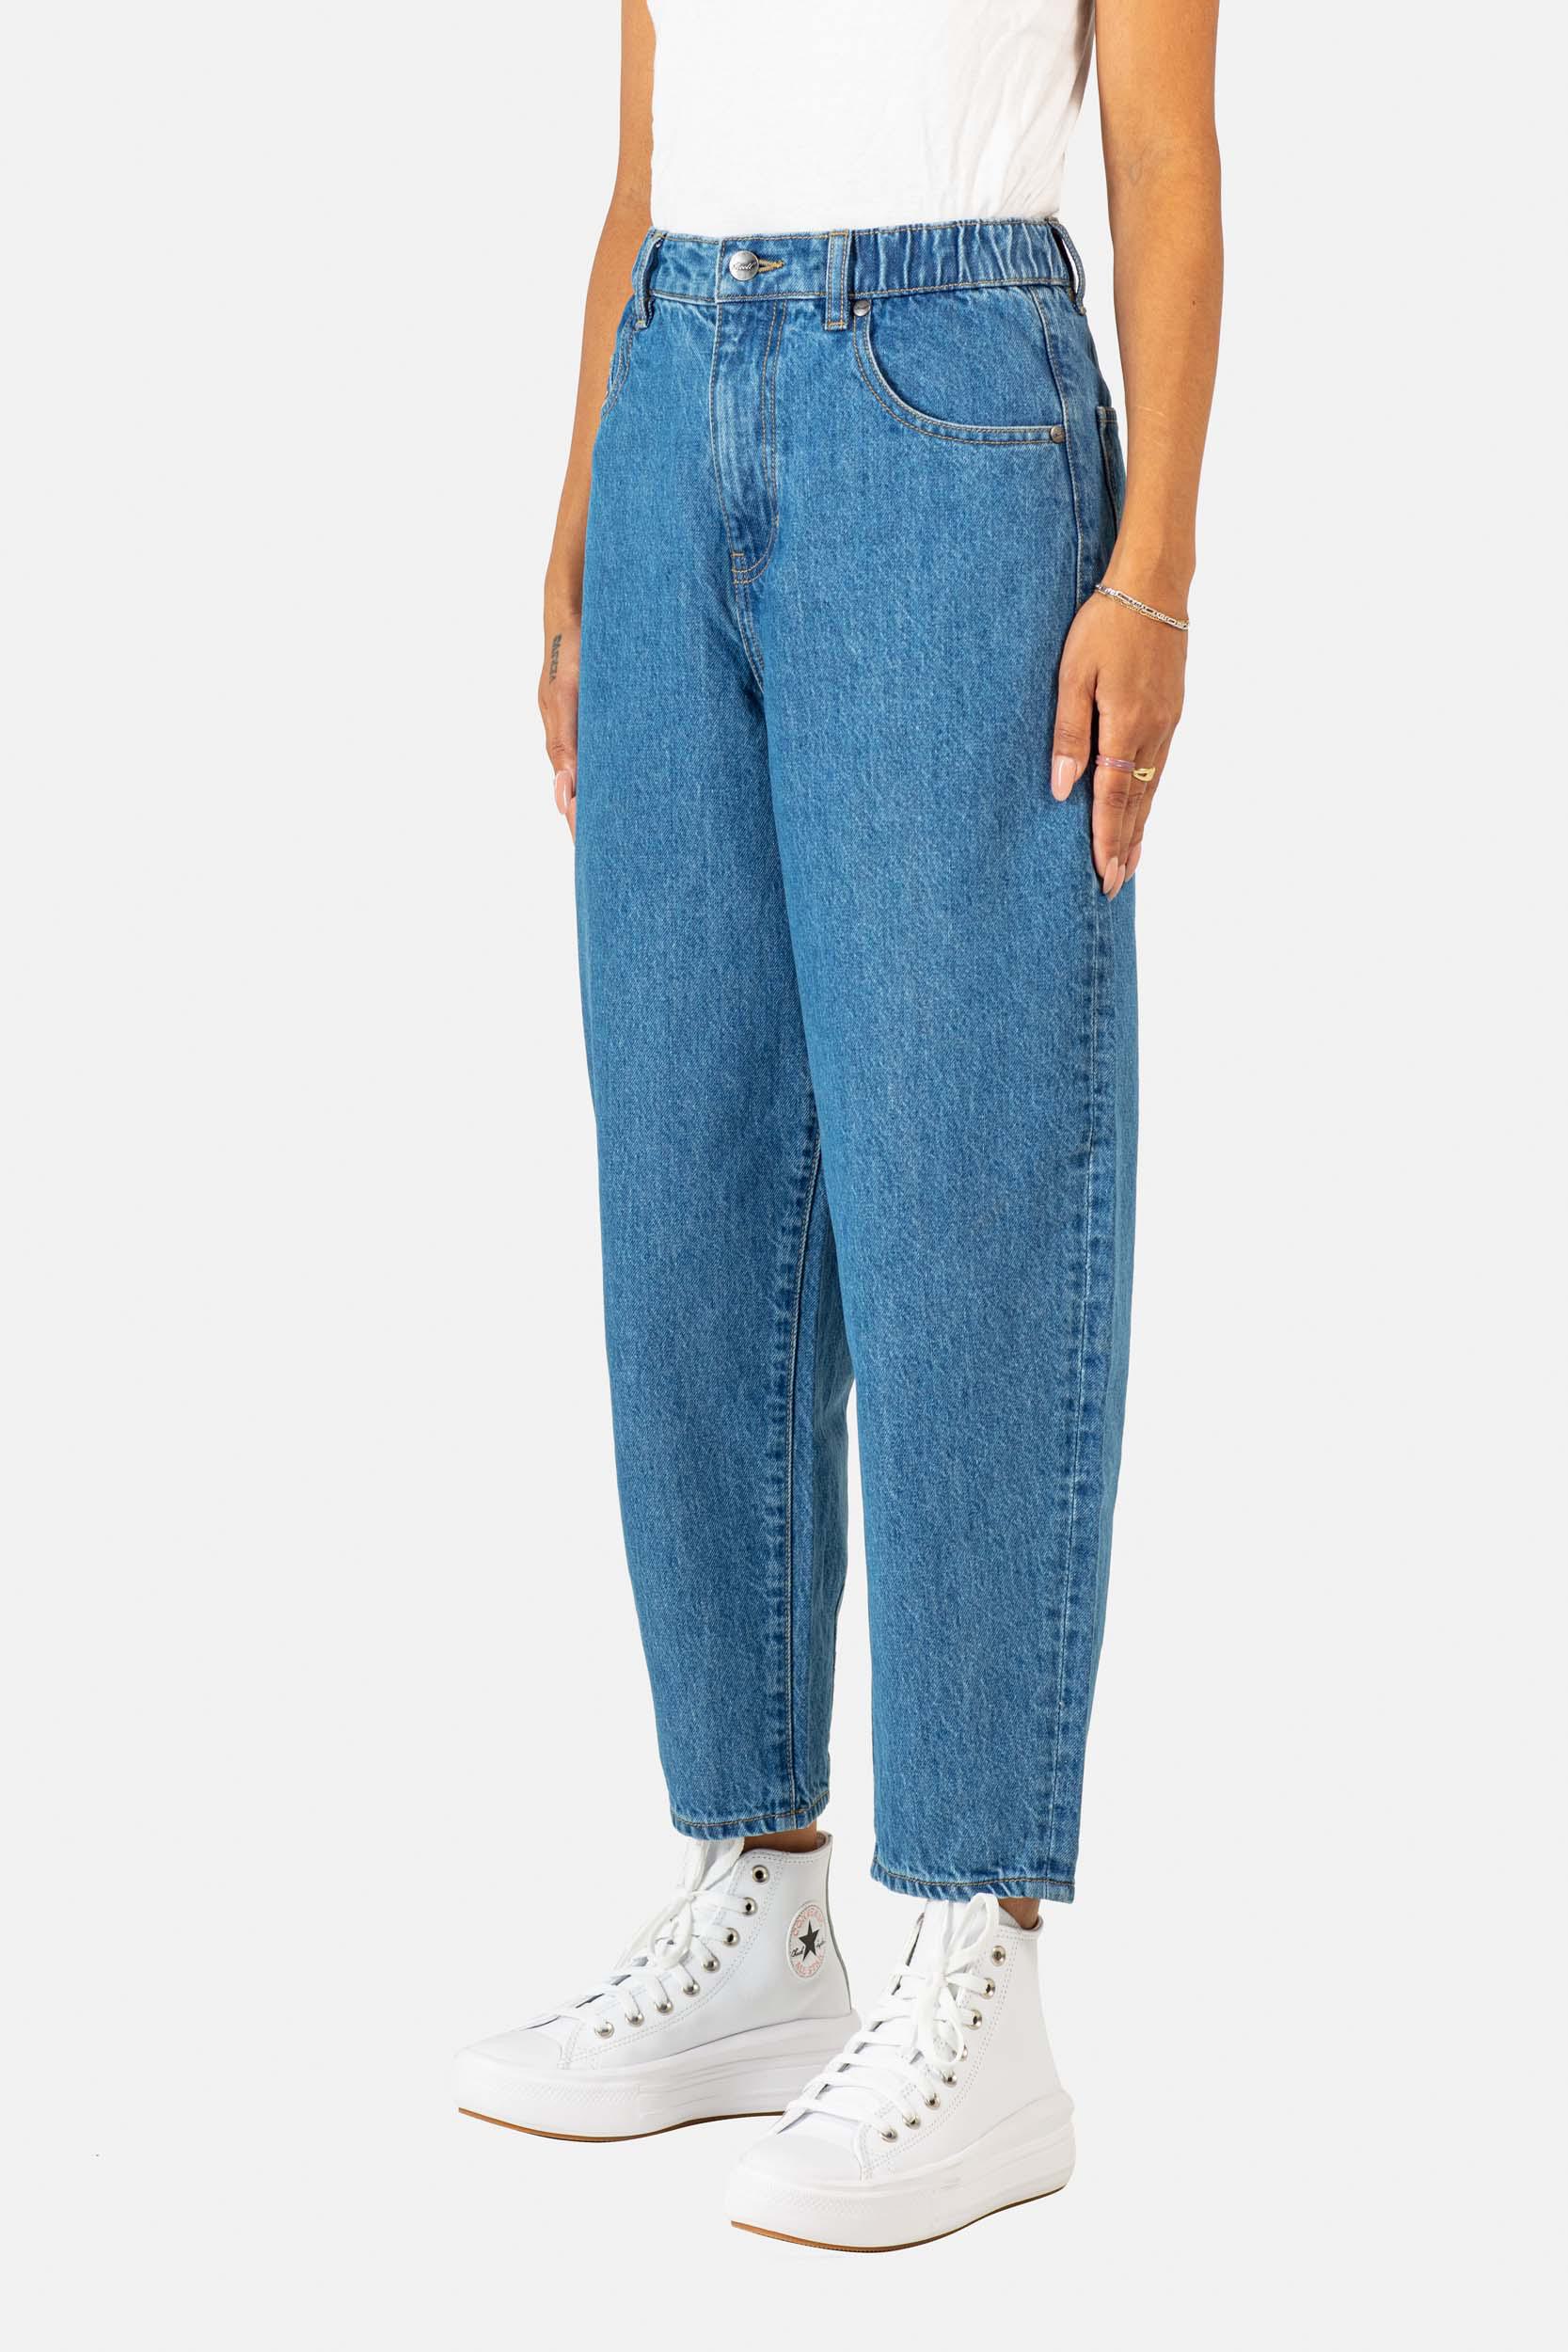 Reell Women Sky Jeans (Farbe: Origin Mid Blue / Größe: 27)